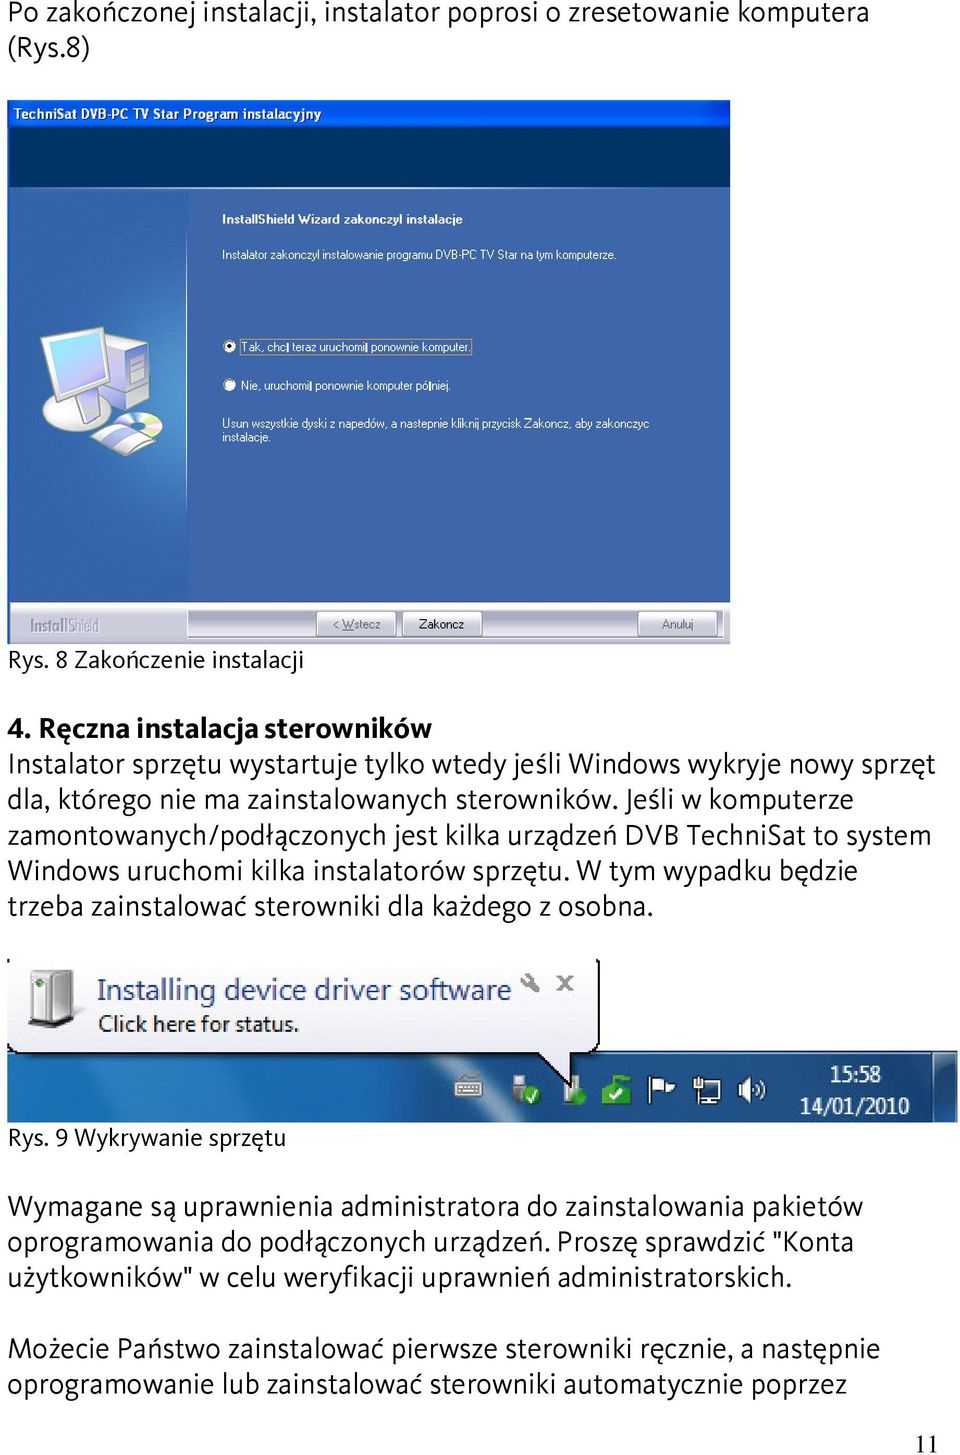 Jeśli w komputerze zamontowanych/podłączonych jest kilka urządzeń DVB TechniSat to system Windows uruchomi kilka instalatorów sprzętu.